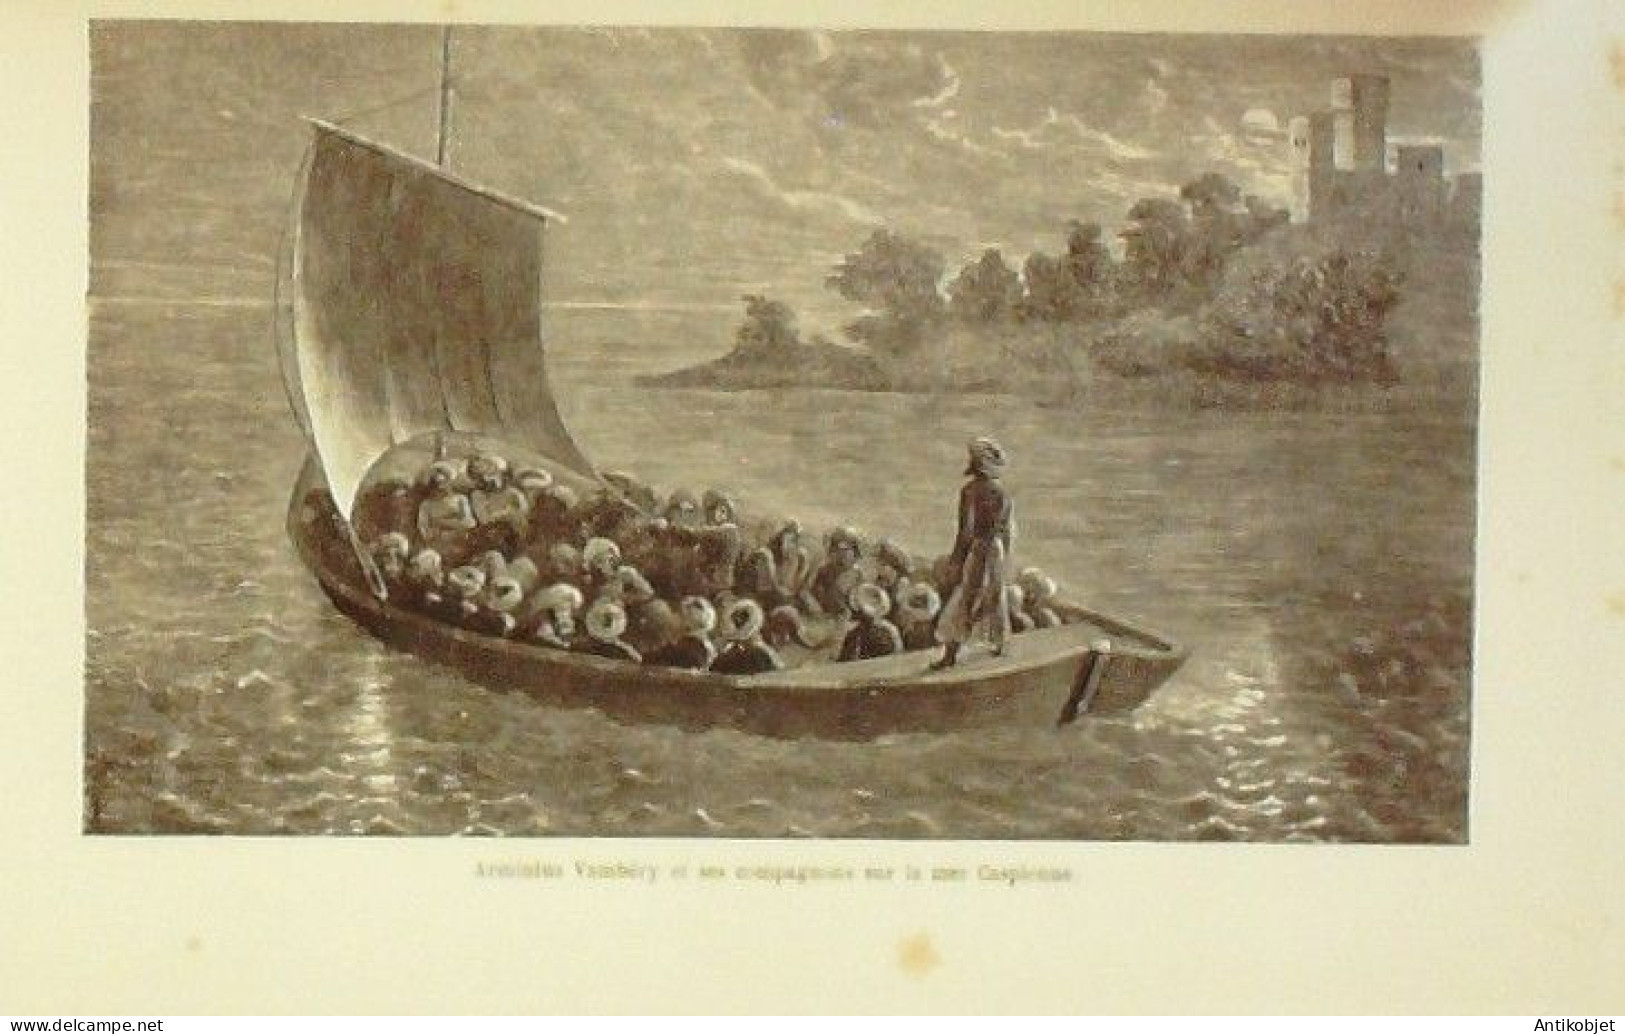 Vambéry Arminius voyages d'un faux Derviche Asie centrale 1865